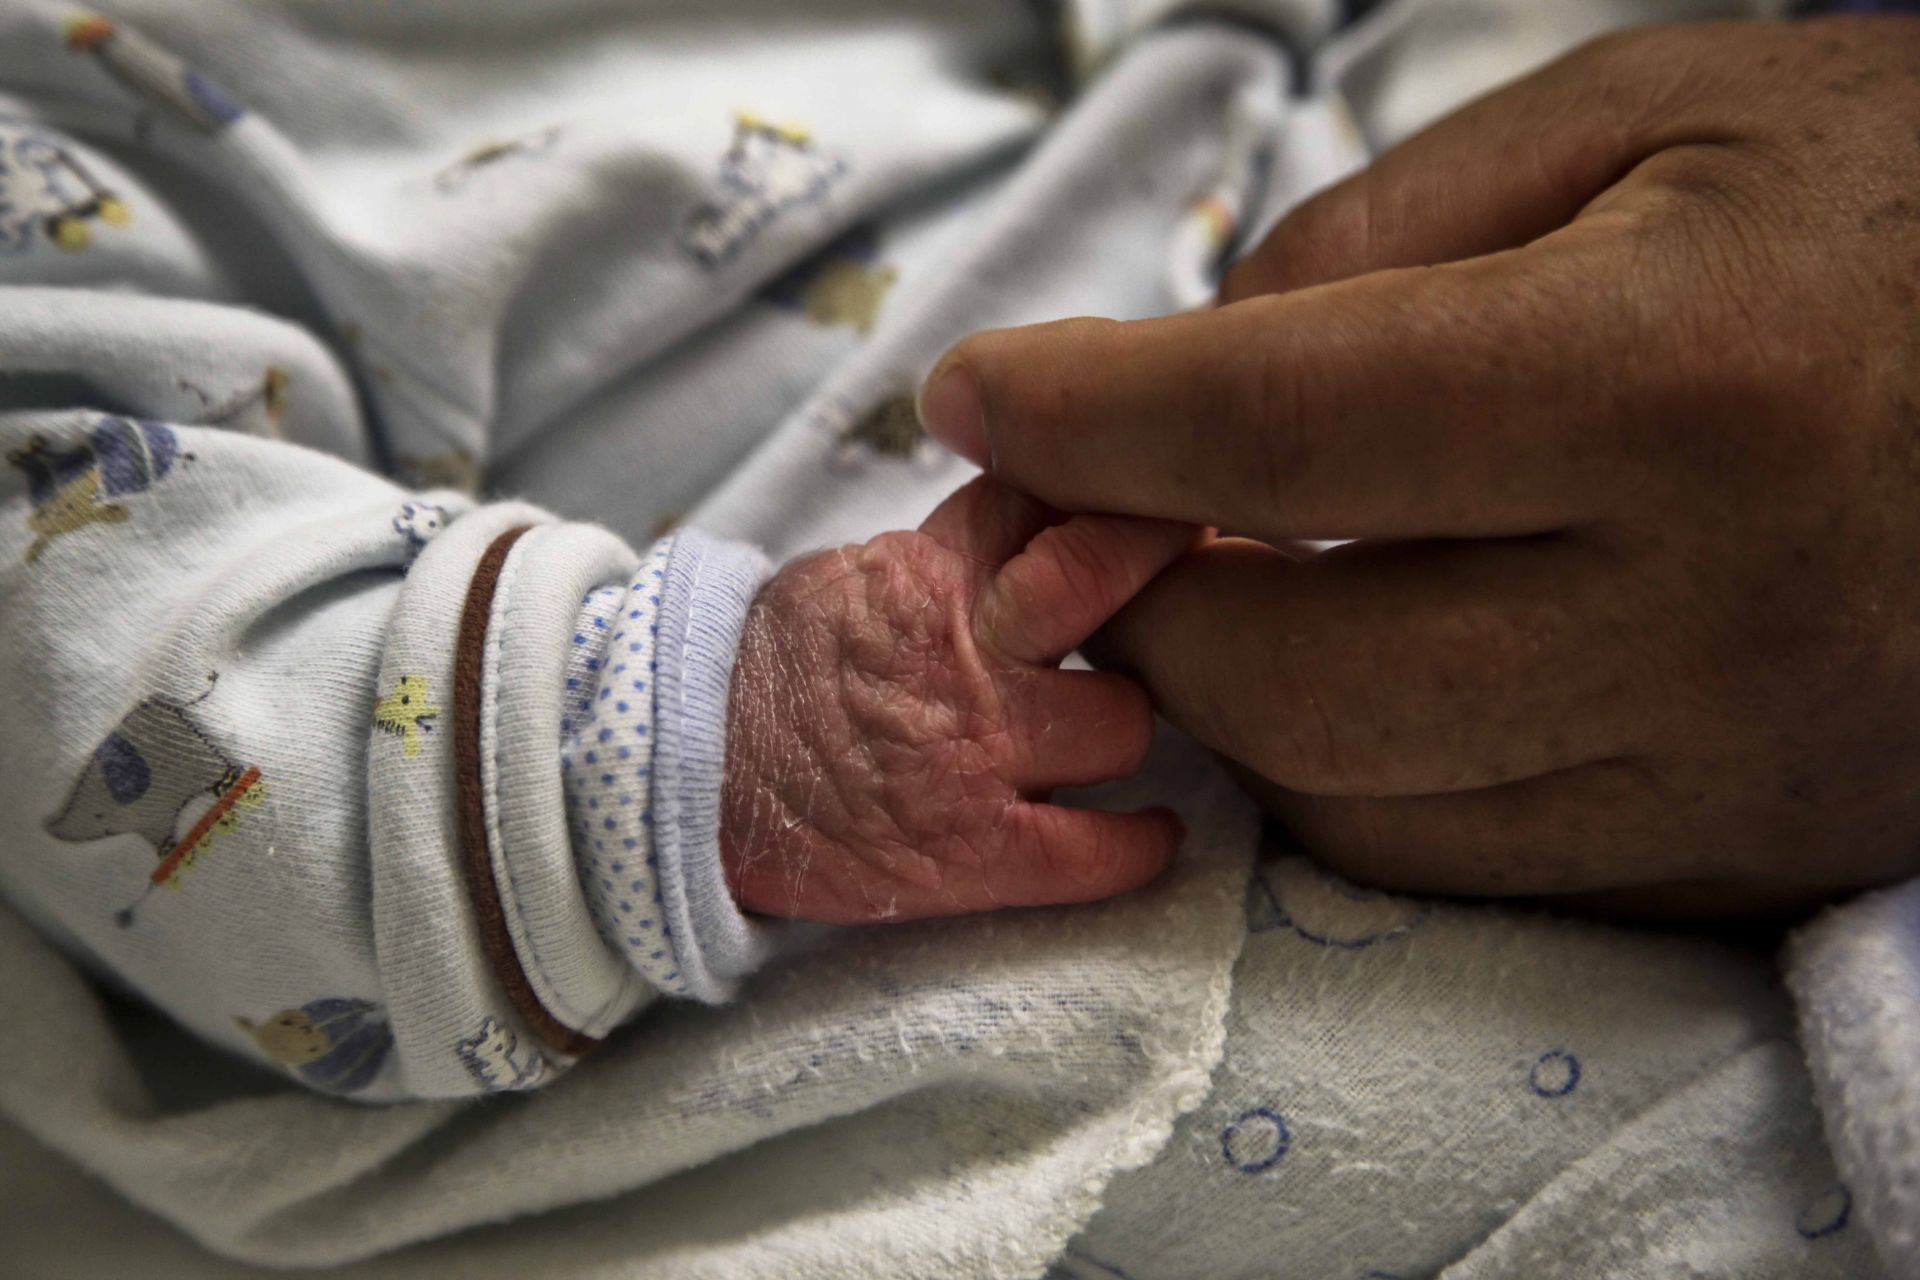 Familiares de bebé, lesionado de una oreja durante cesárea en Baja California, demandan a médicos. FOTO Cuartoscuro